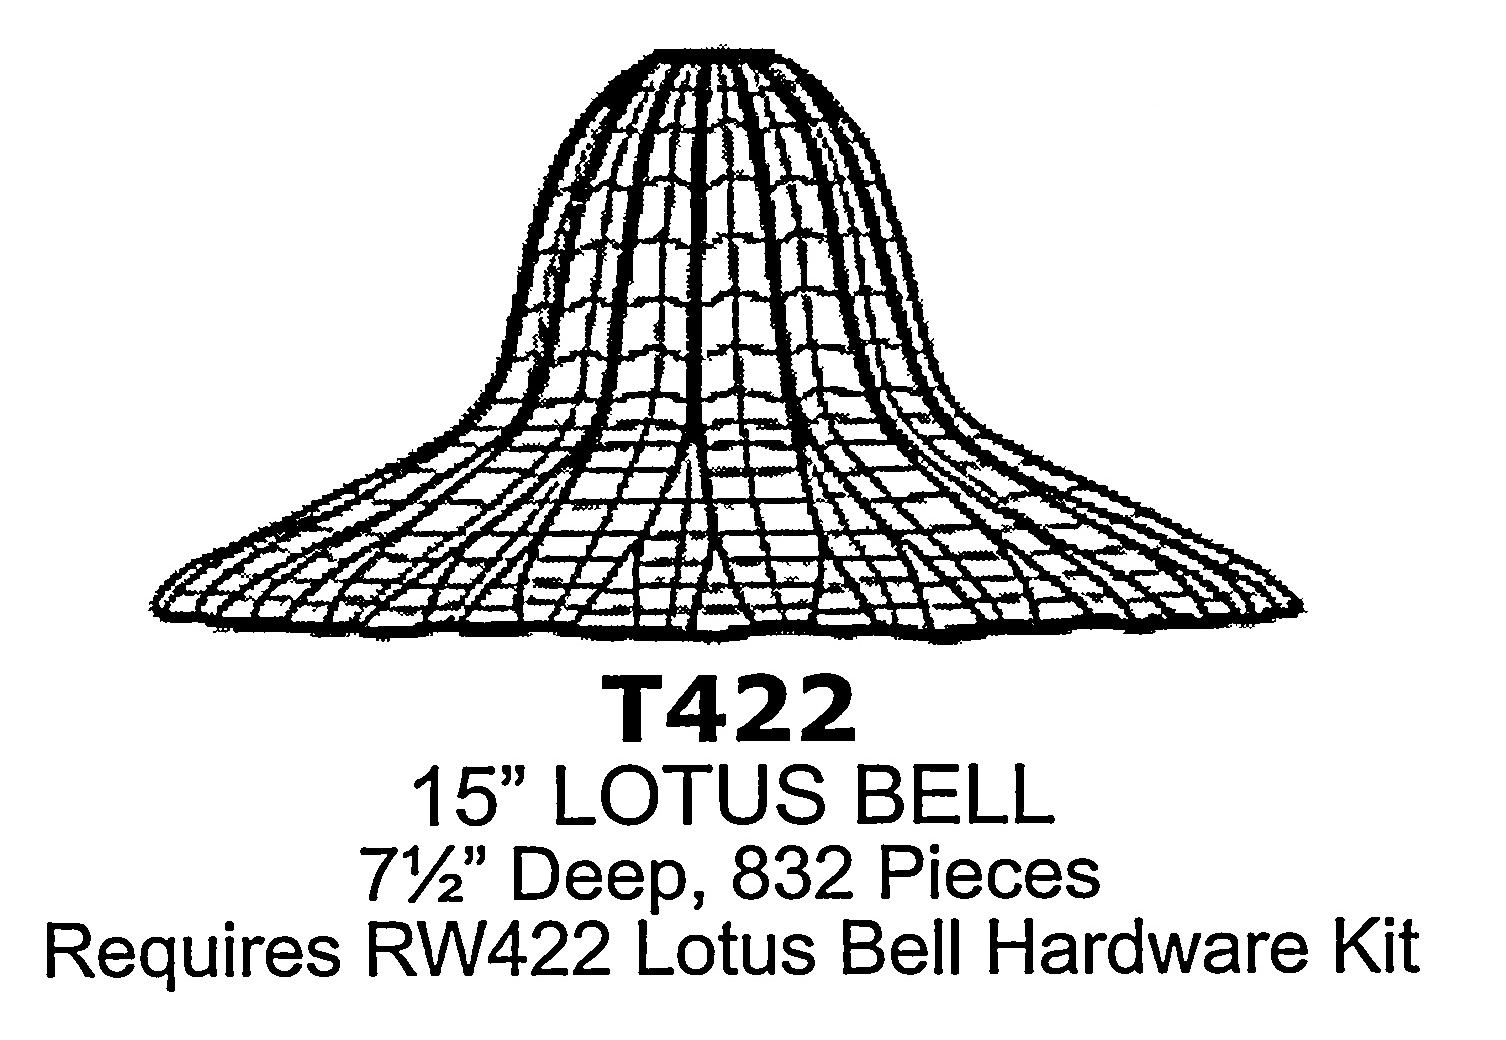 15" Lotus Bell